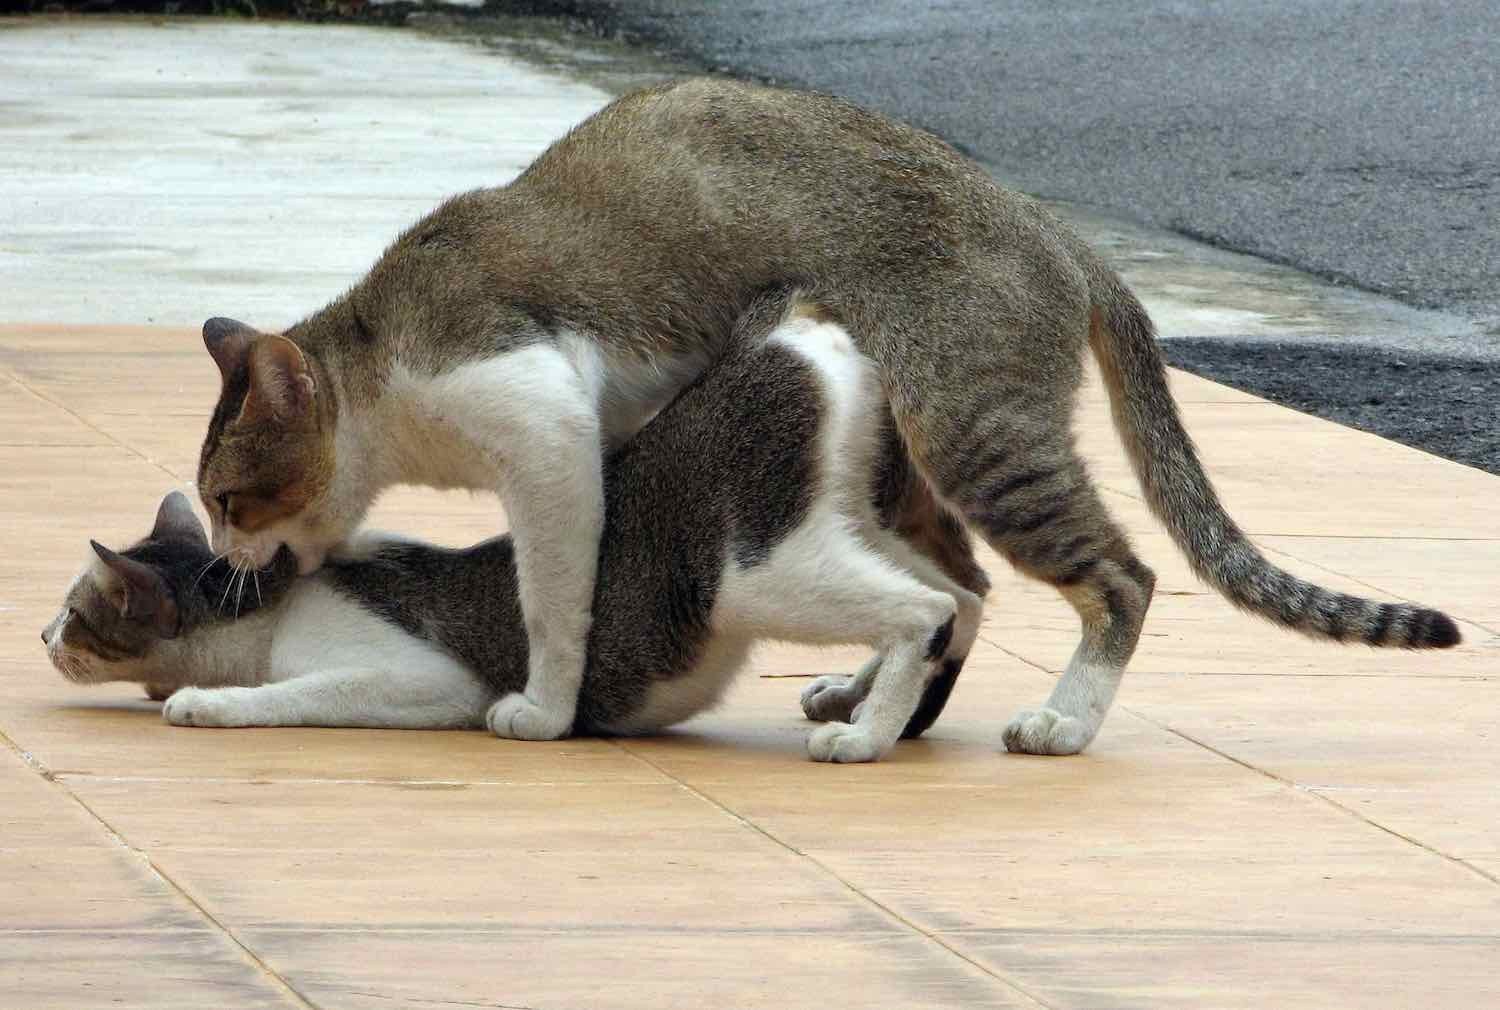 Кошка Вылизывает Порно